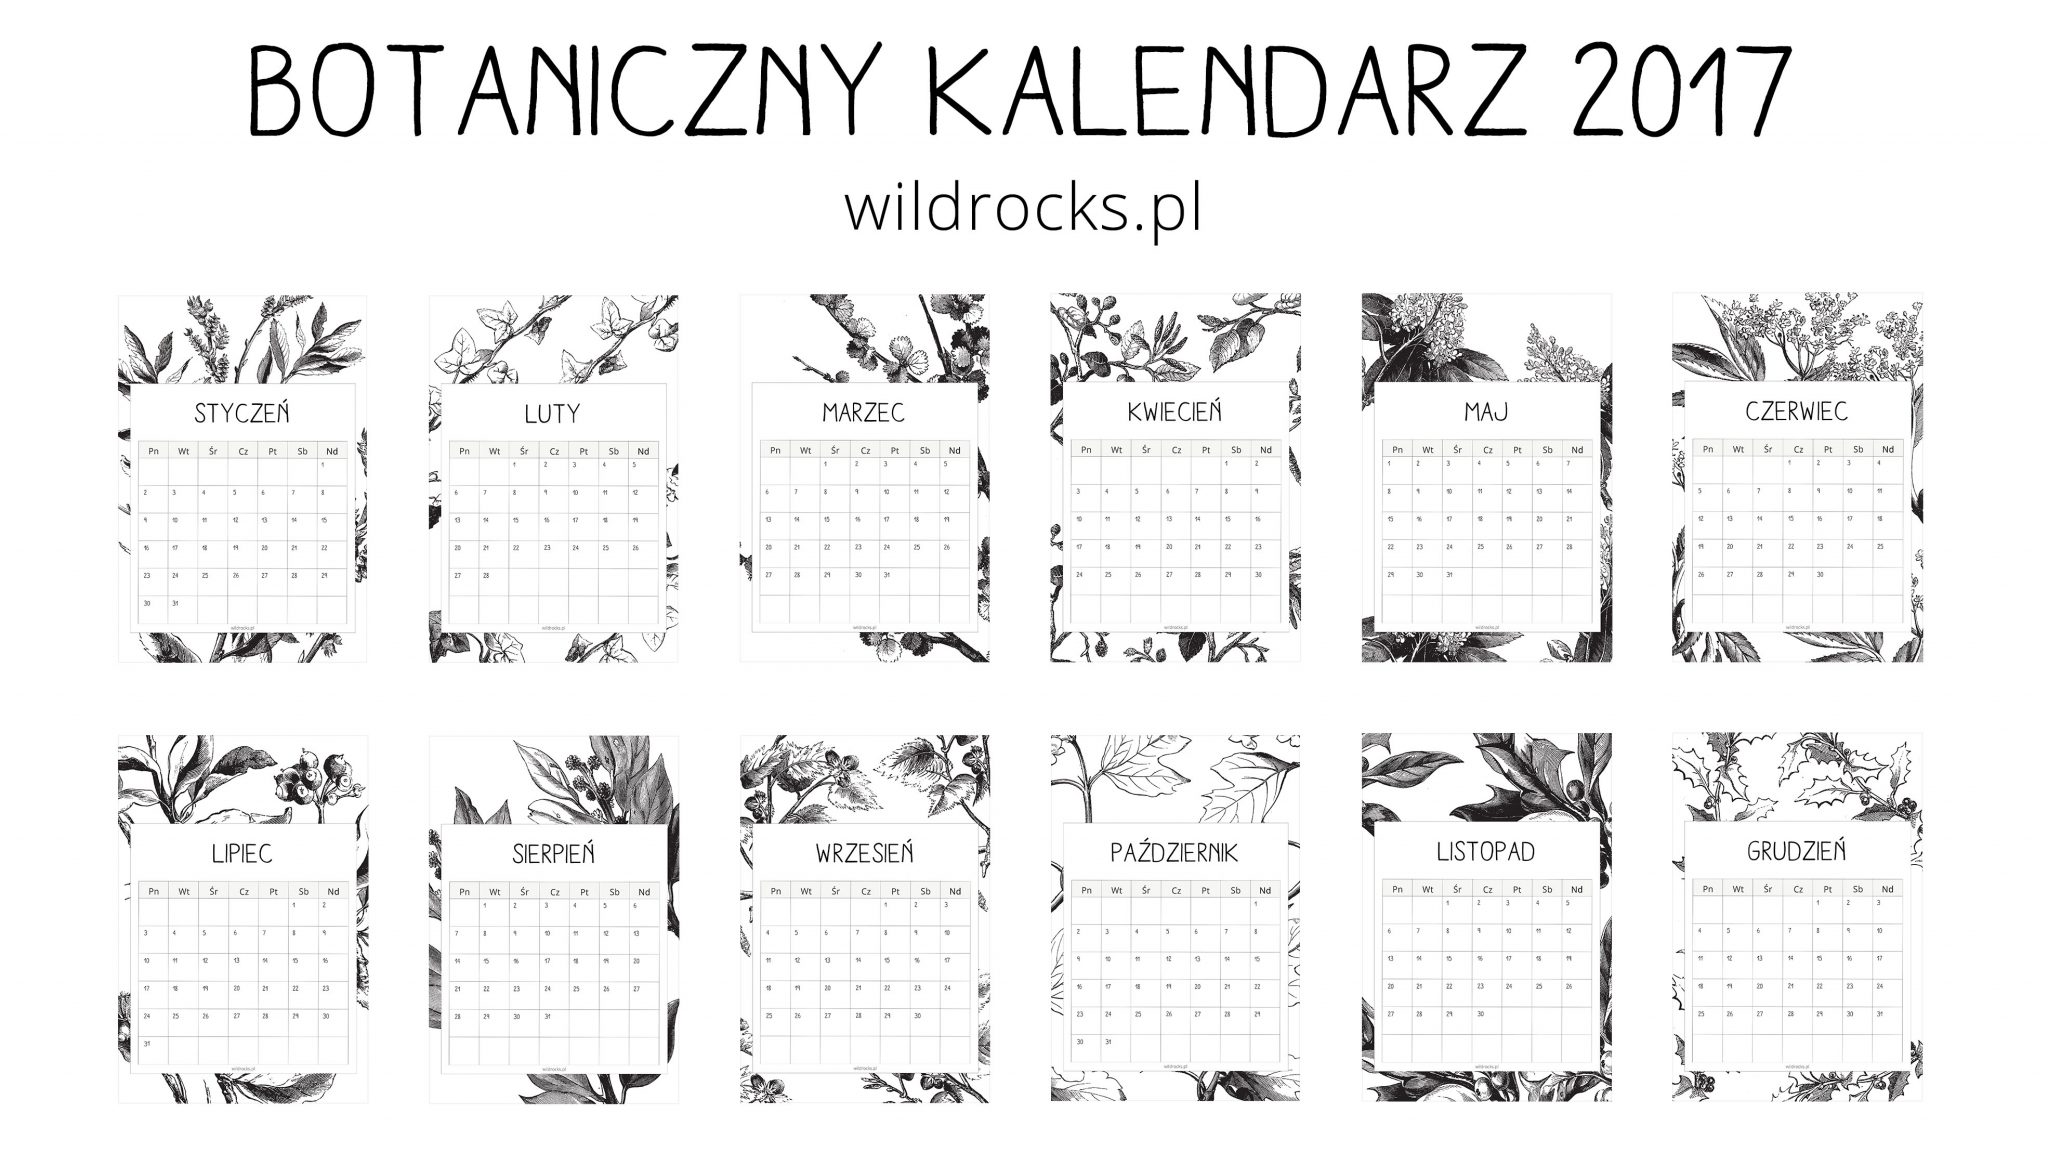 kalendarz z roslinnym motywem do wydrukowania wild rocks